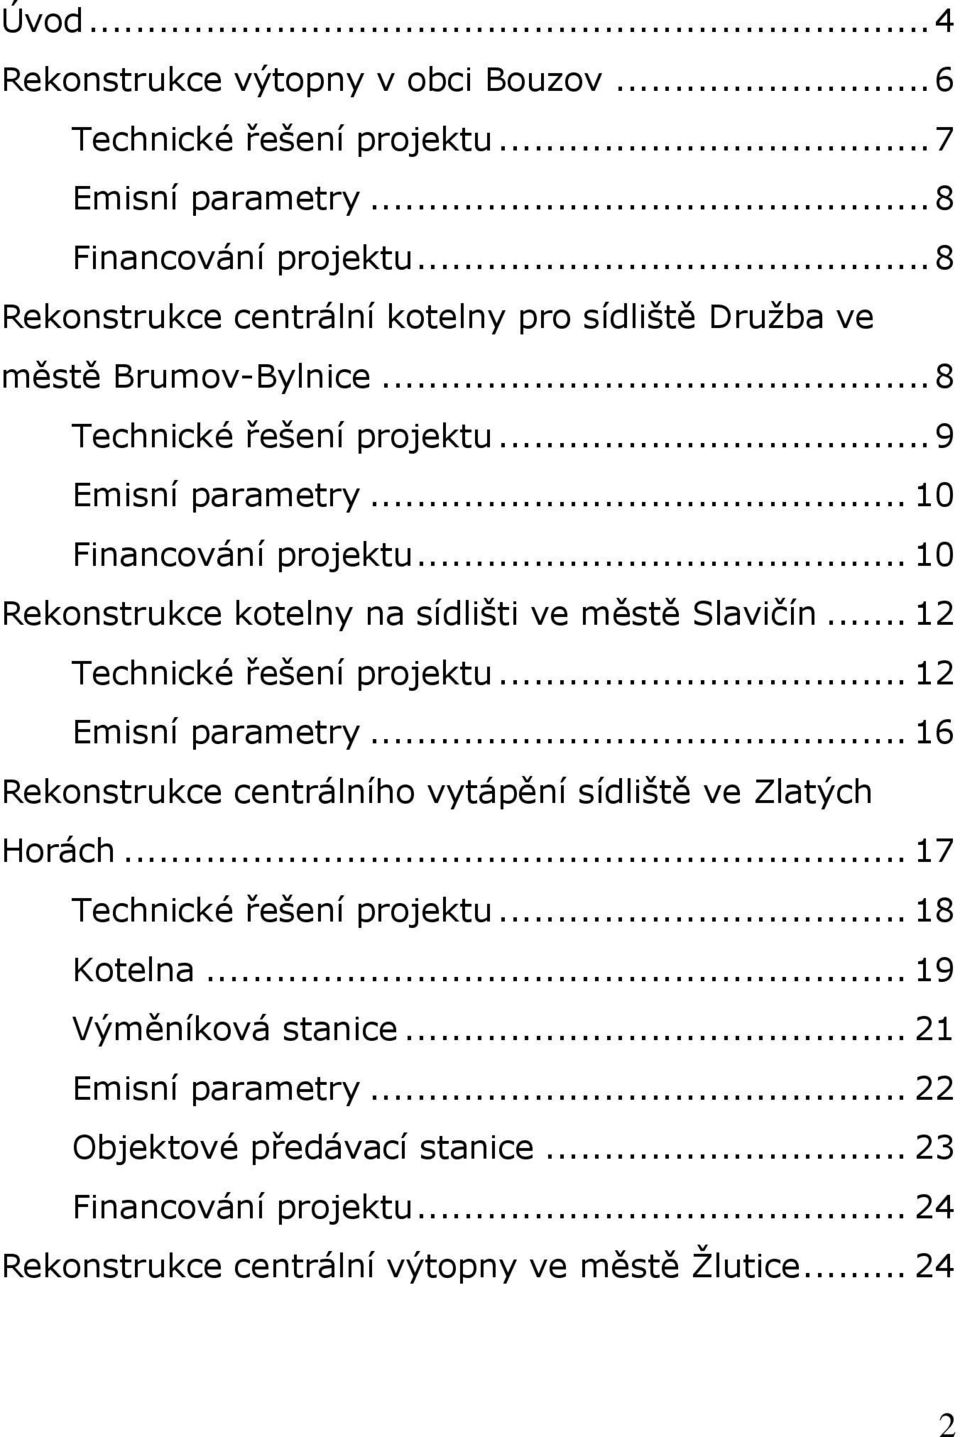 .. 10 Rekonstrukce kotelny na sídlišti ve městě Slavičín... 12 Technické řešení projektu... 12 Emisní parametry.